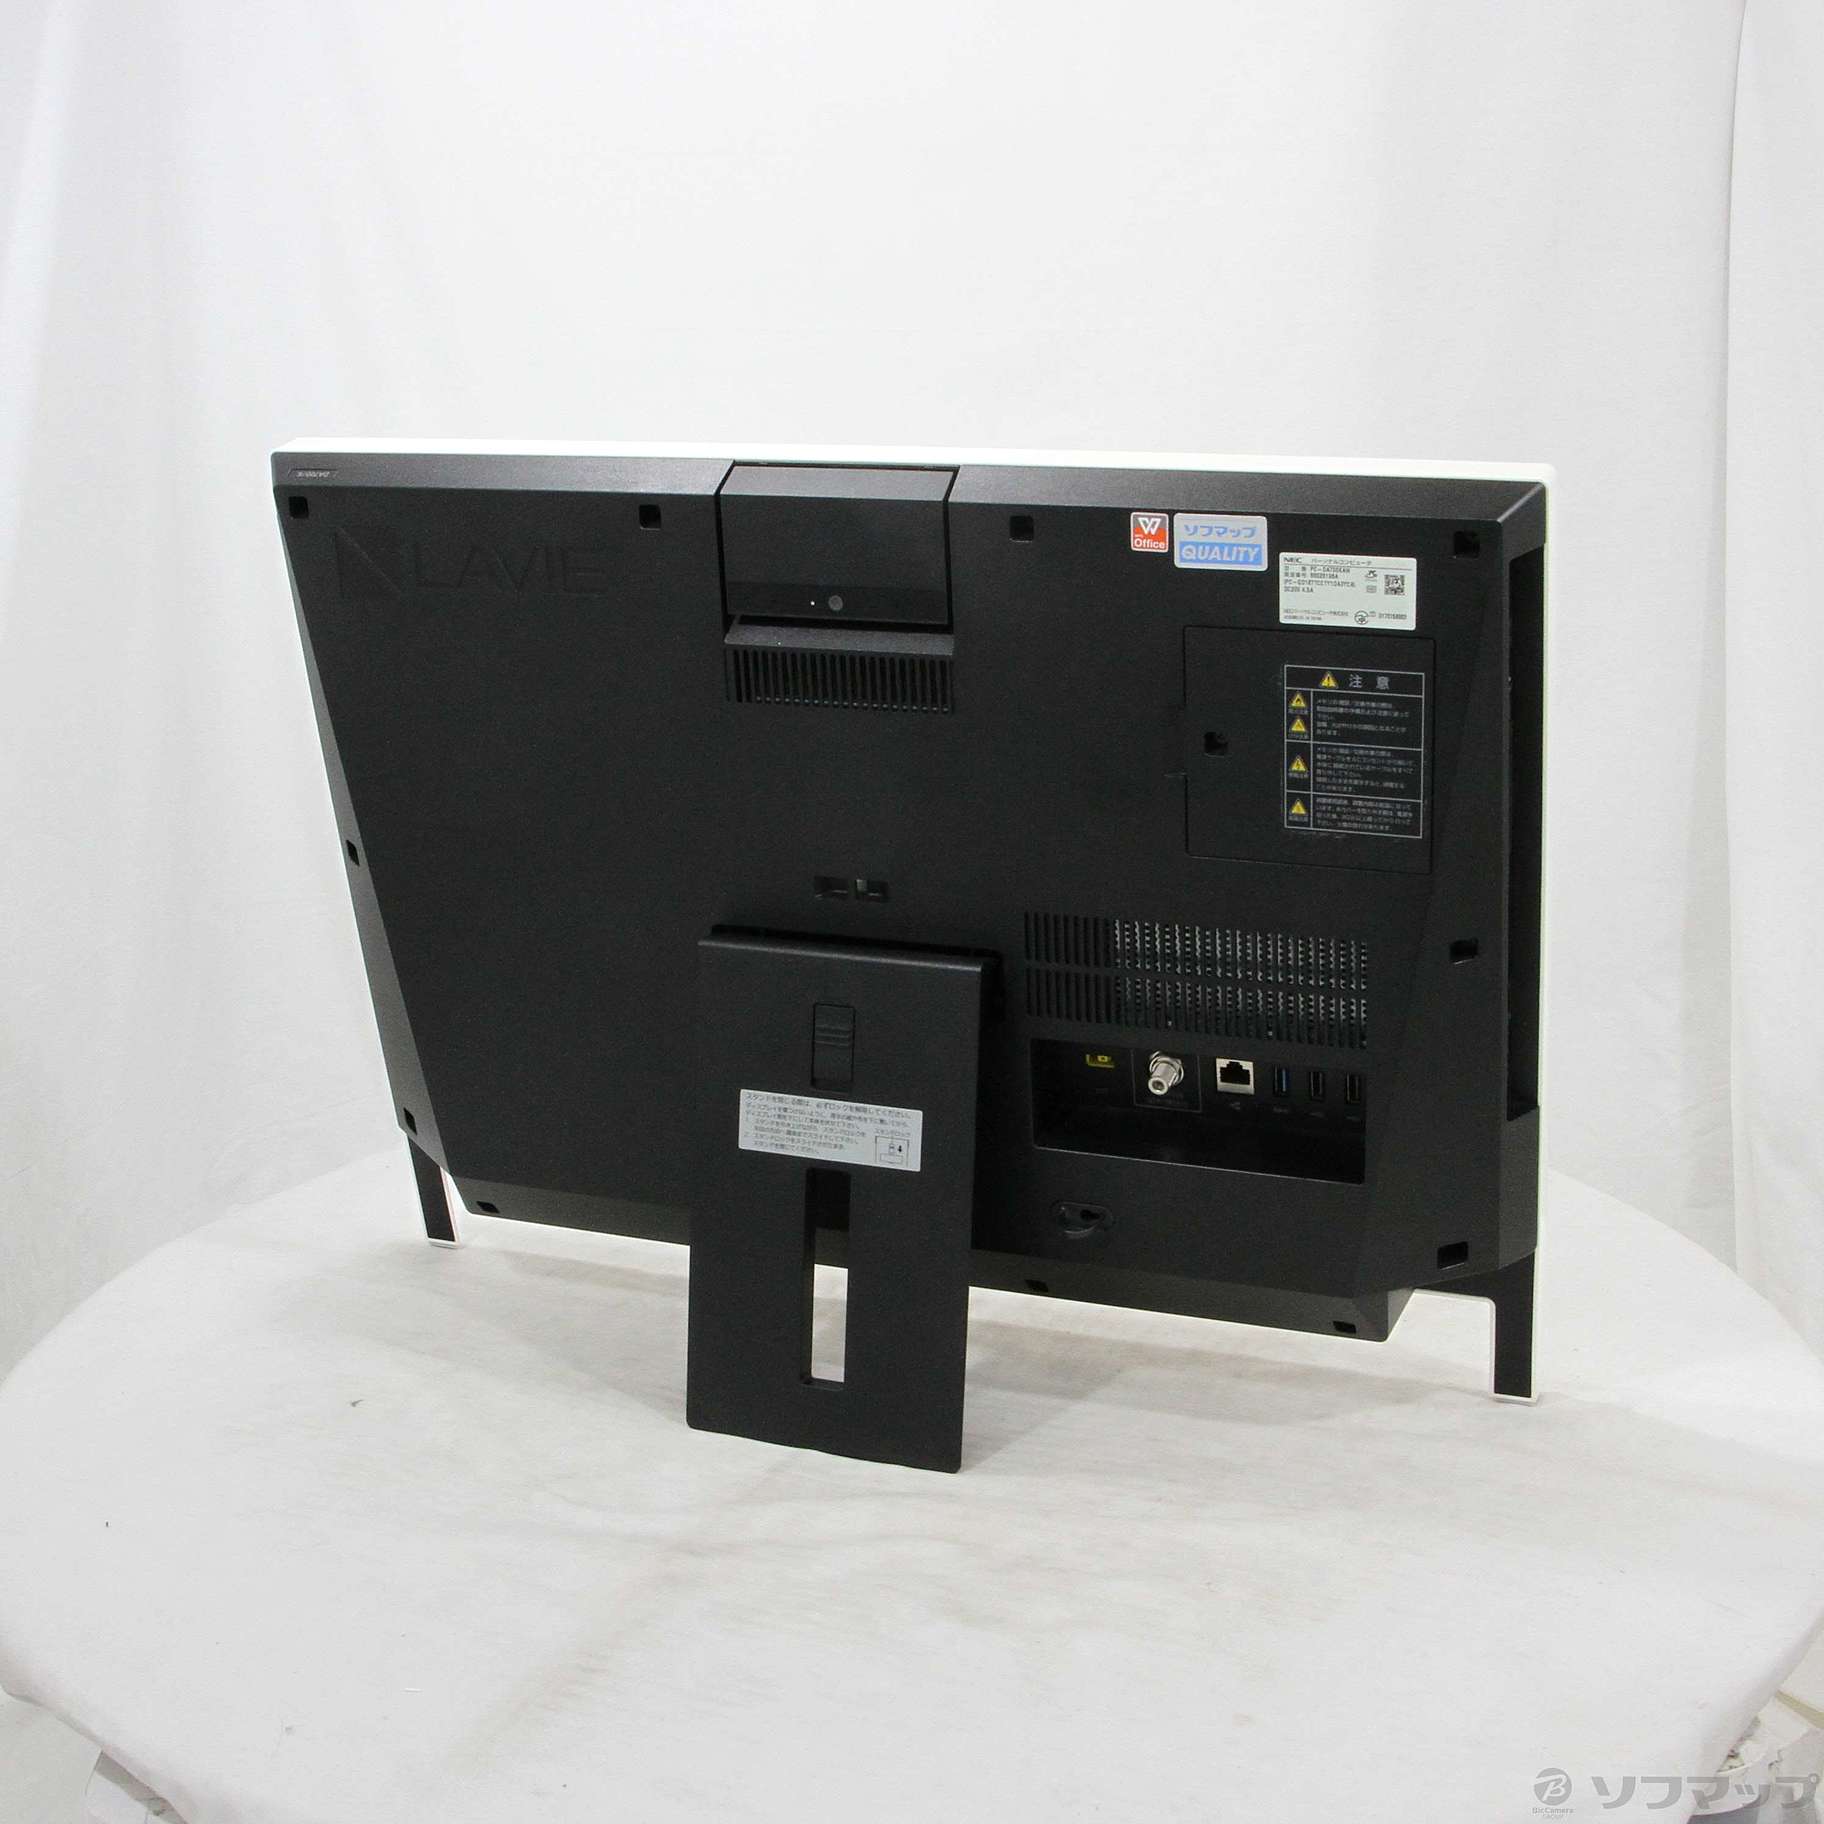 NEC PC-DA700KAW(一体型) - デスクトップパソコン